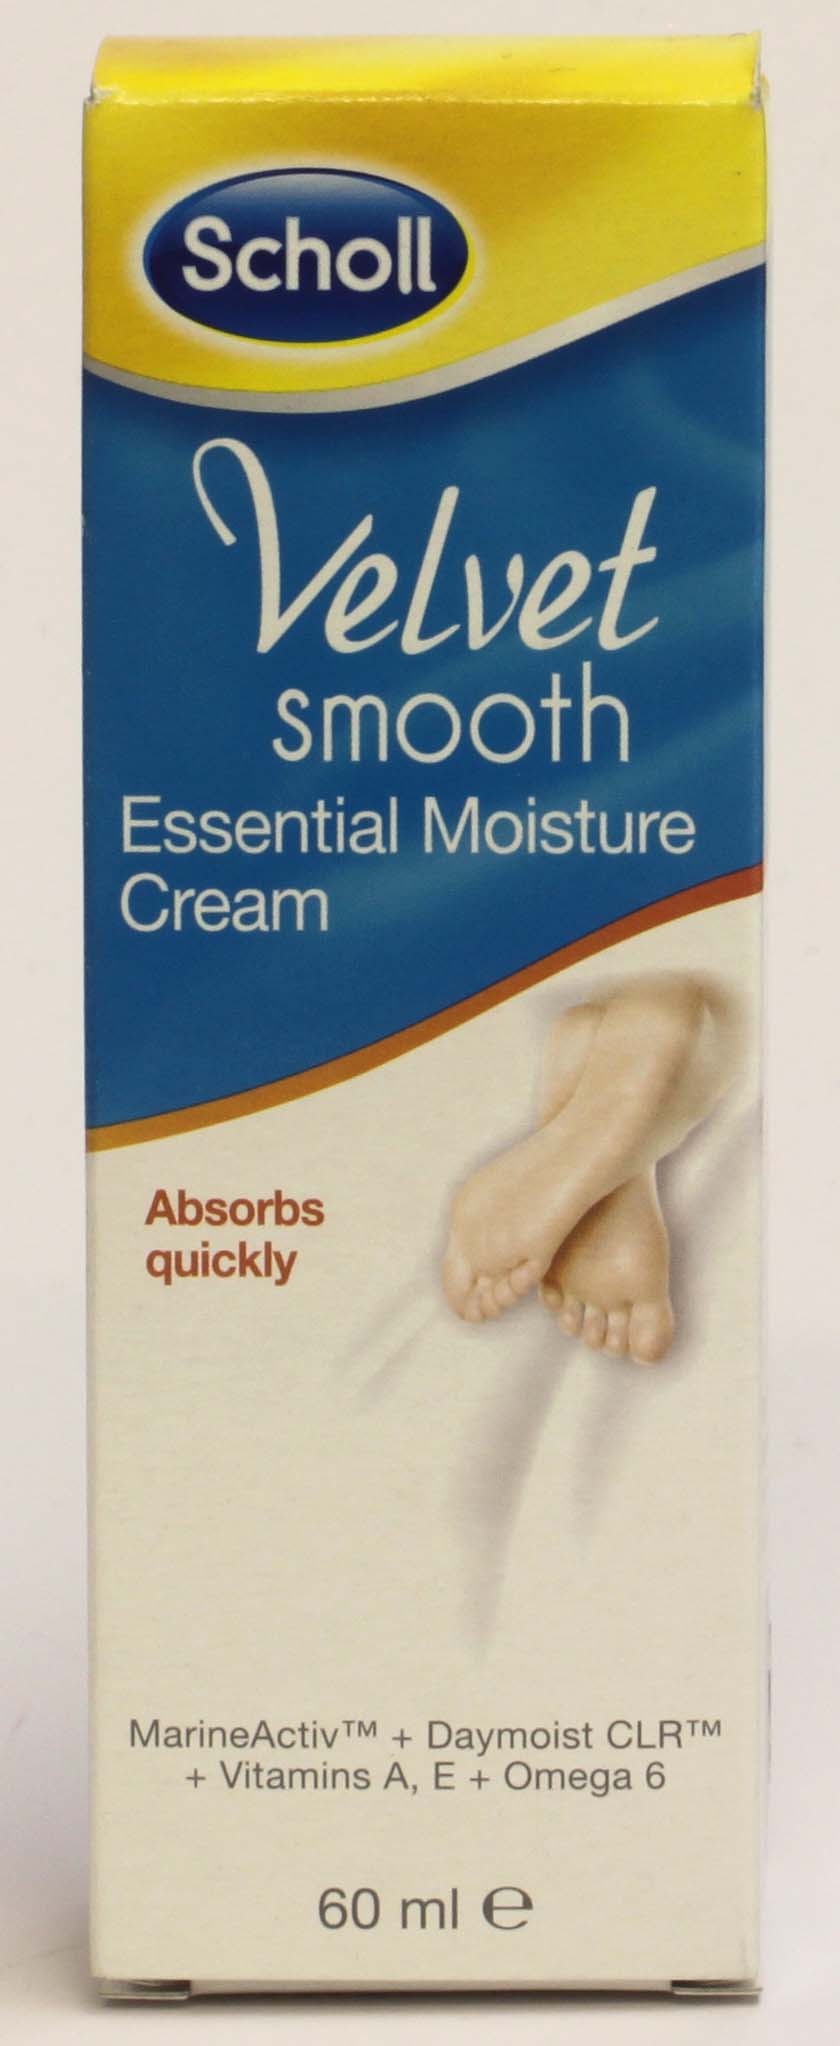 Scholl Velvet Smooth Essential Moisture Cream 60ml